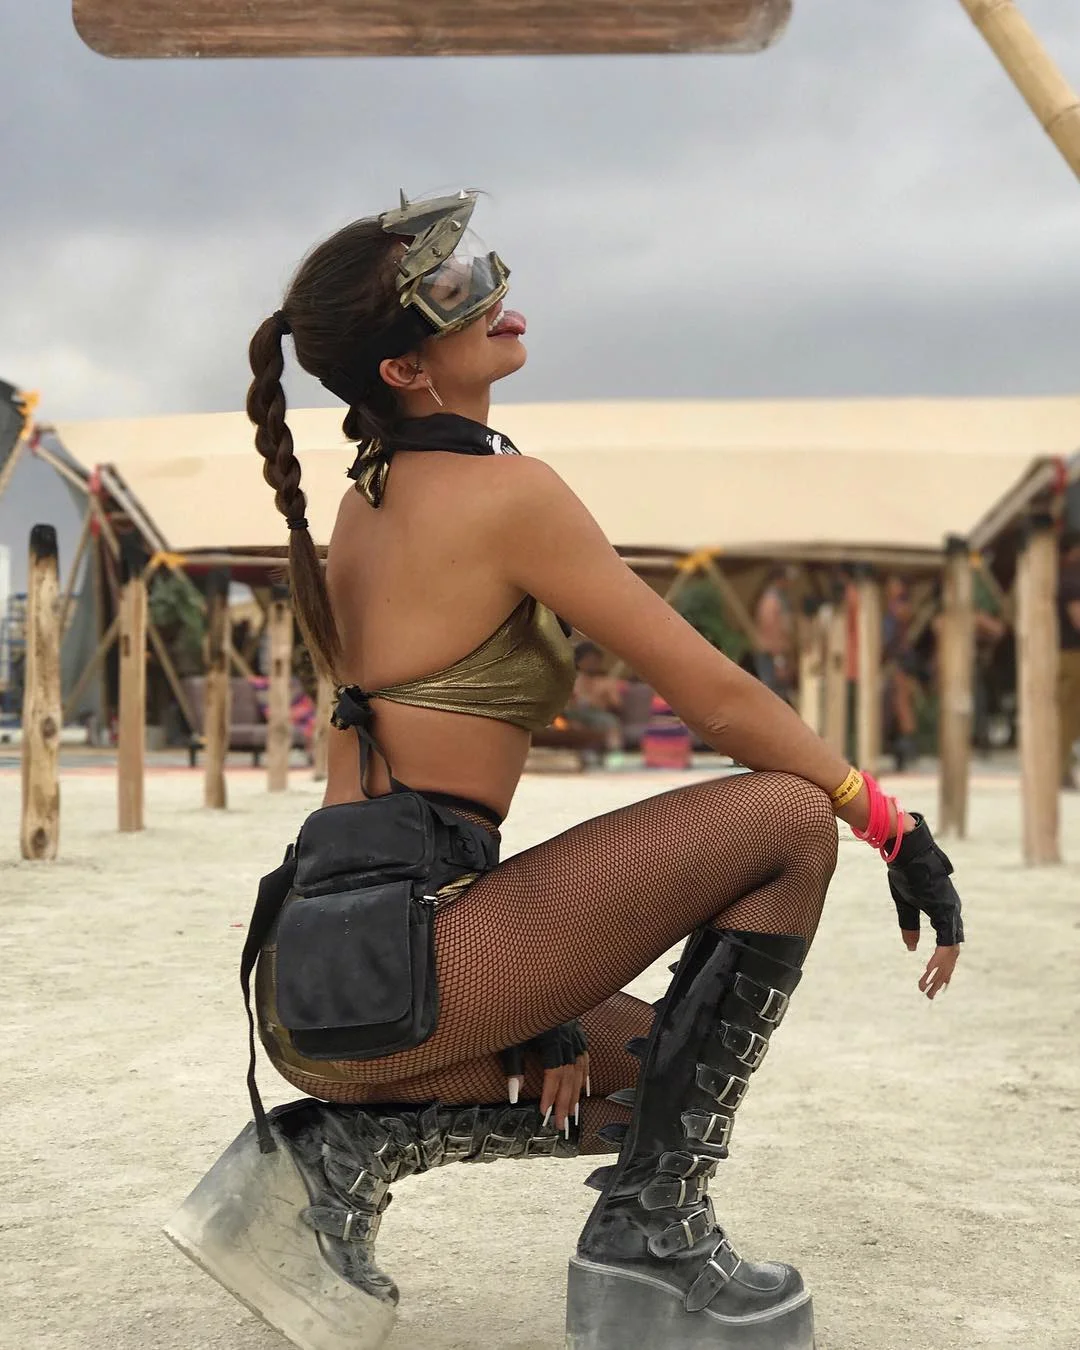 Пыль, голые тела и современное искусство: крутые фото с фестиваля Burning Man 2017 - фото 336403